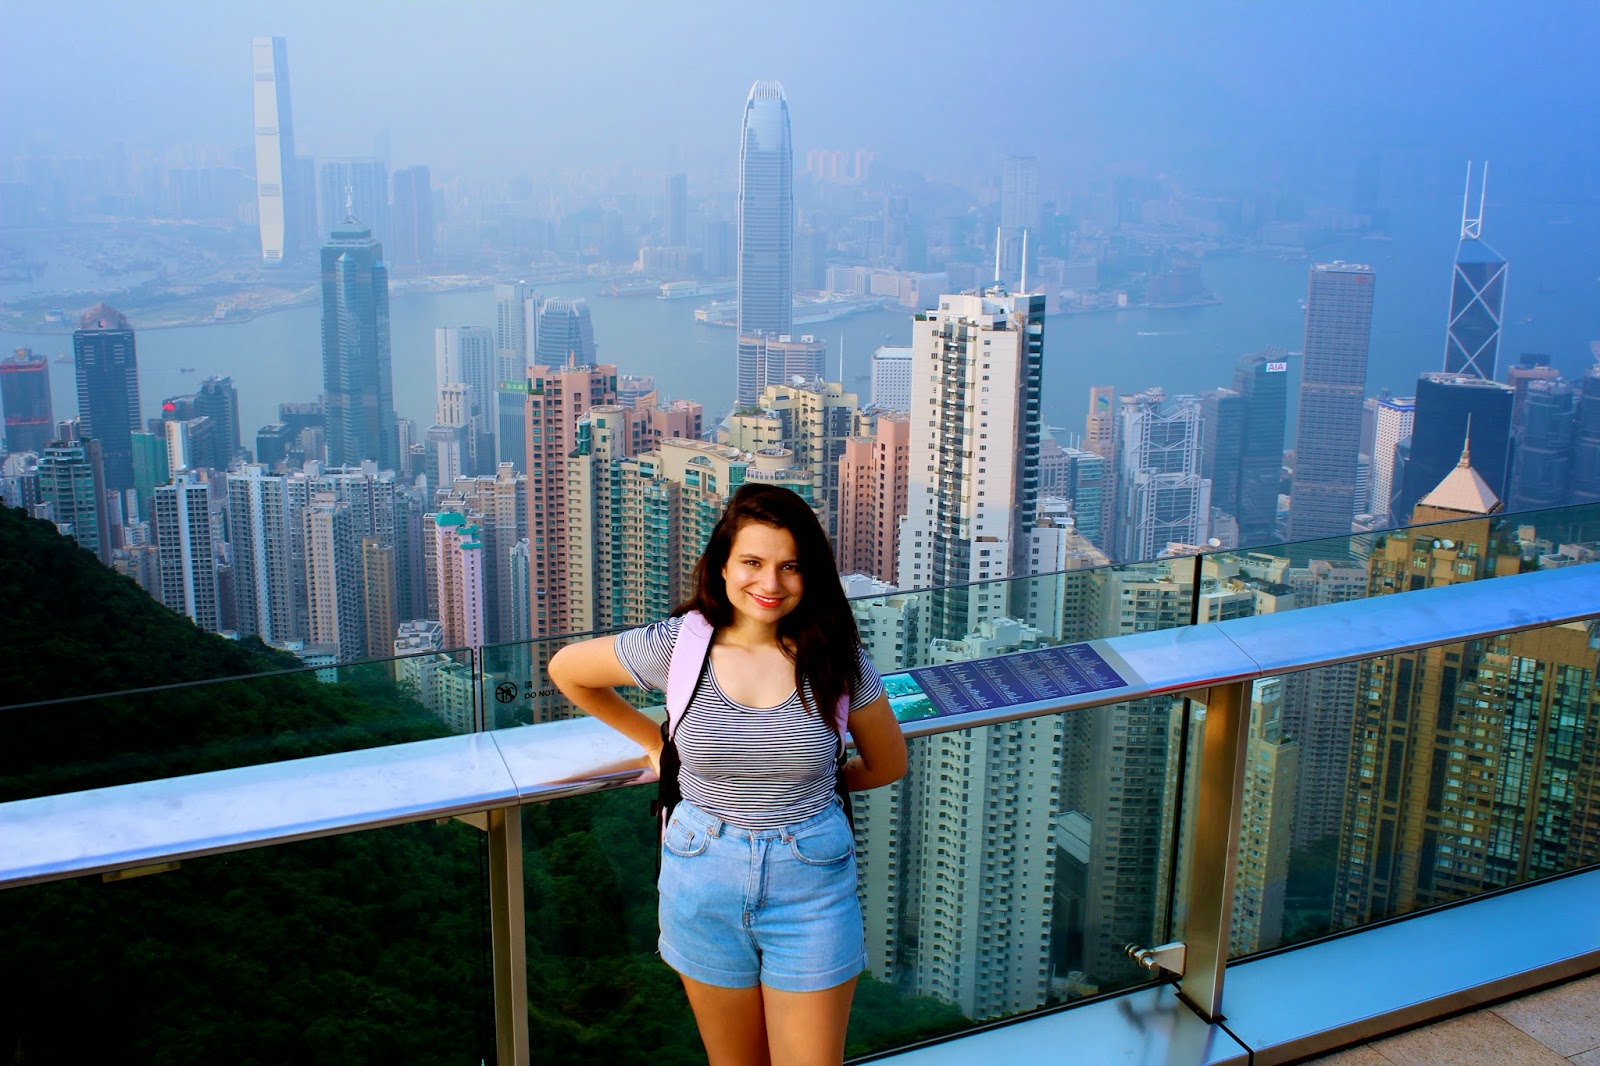 A Day in Hong Kong, Girl + World: A Day in Hong Kong, Girl + World. xxxxx. 